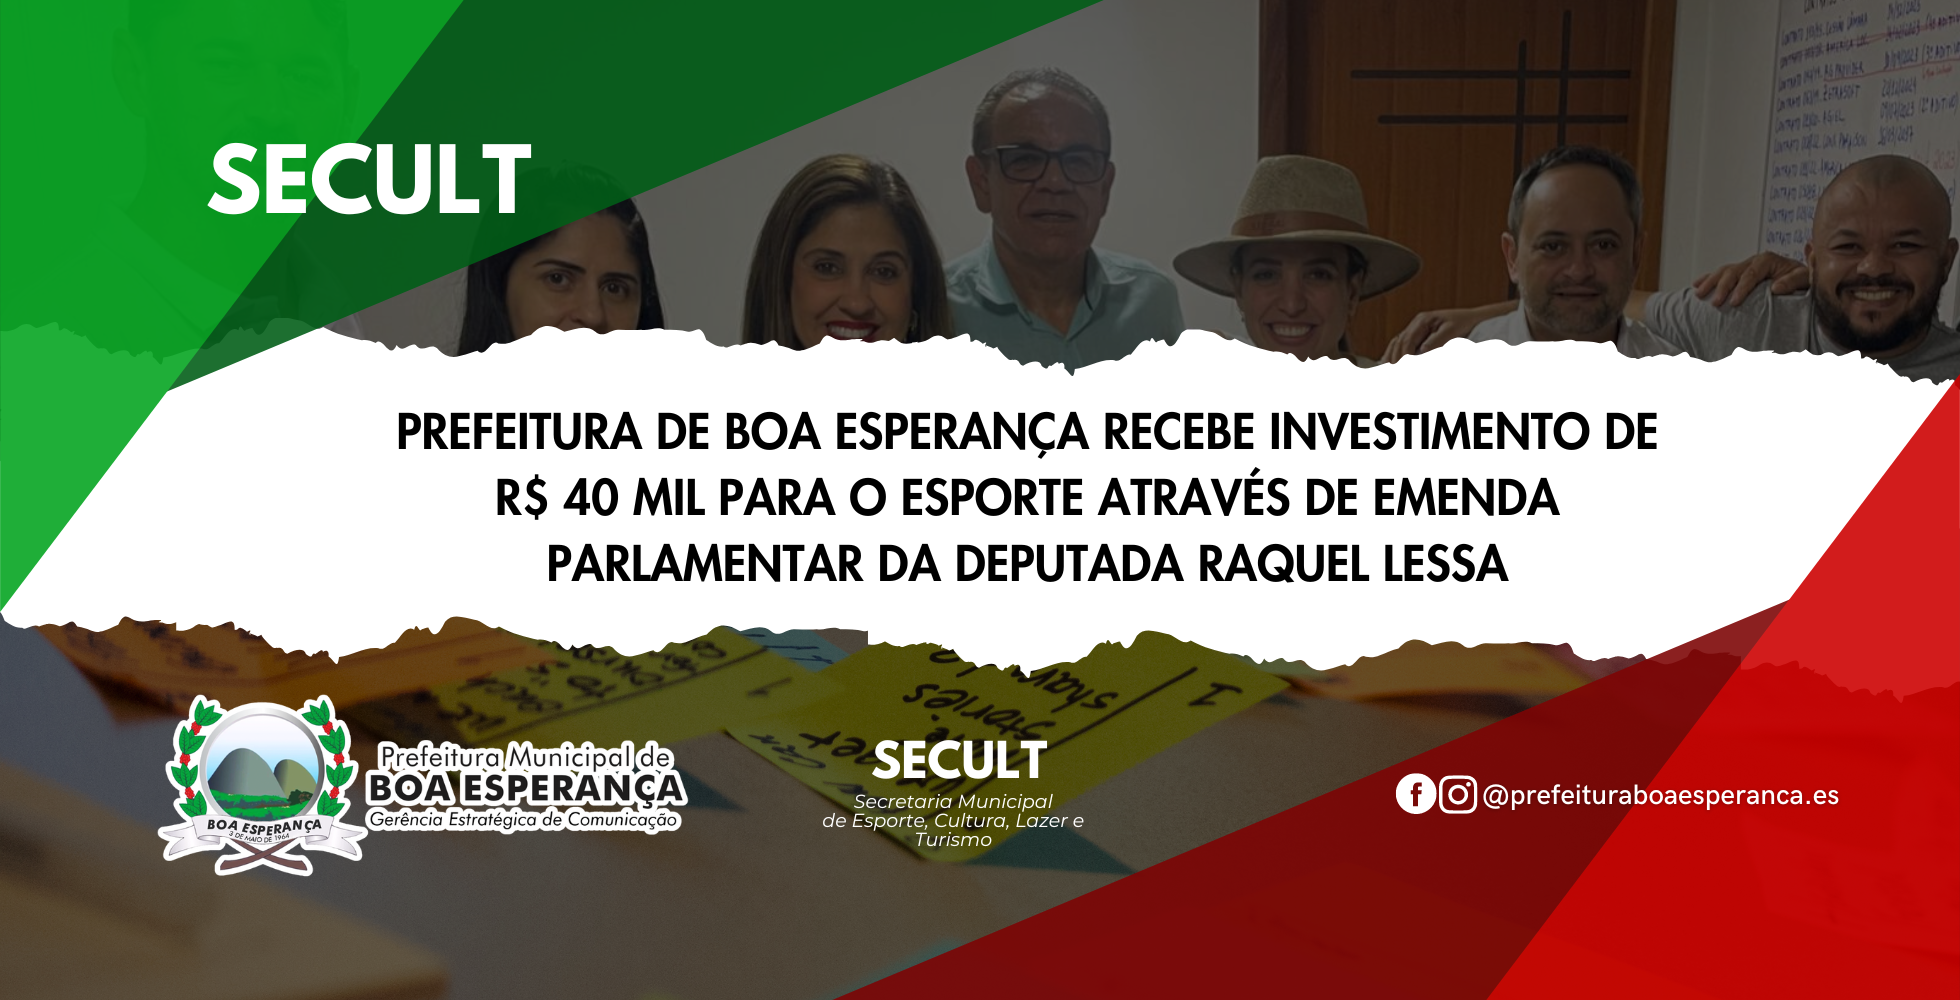 Prefeitura de Boa Esperança Recebe Investimento de R$ 40 mil para o Esporte Através de Emenda Parlamentar da Deputada Raquel Lessa